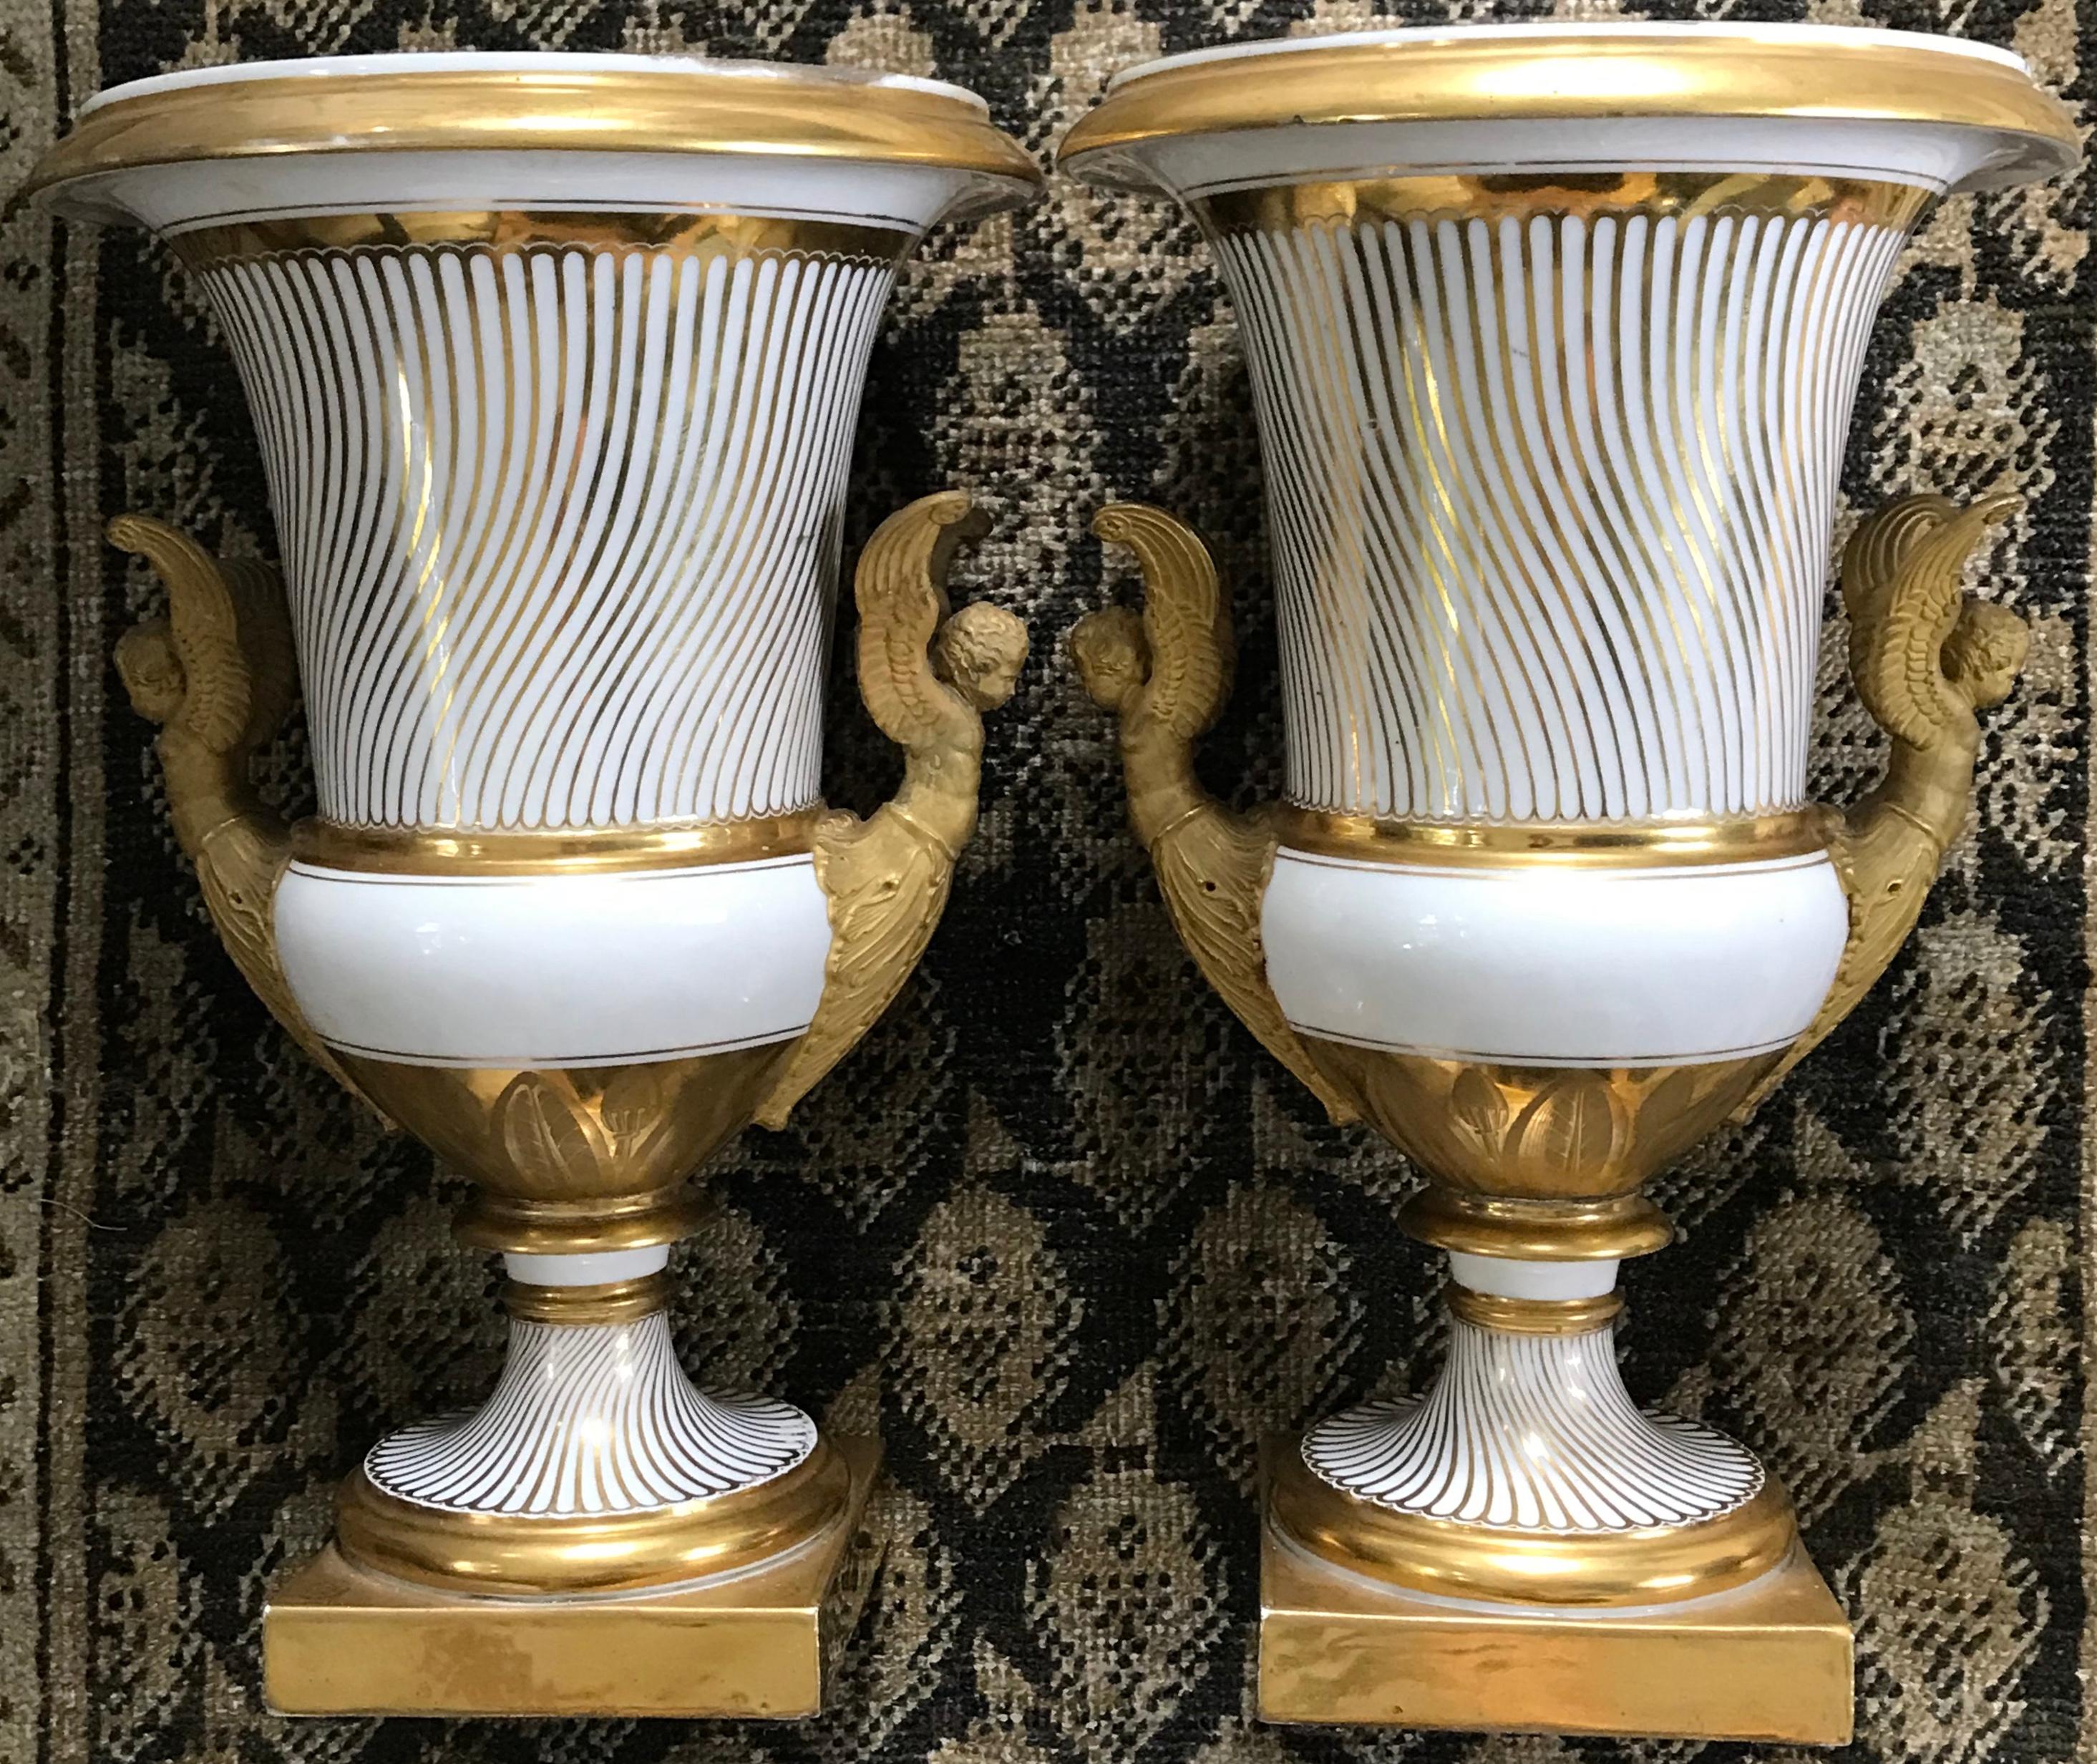 Paire de vases néoclassiques en porcelaine de Paris dorée. Exceptionnelle paire de grandes urnes de forme campanaire peintes en blanc et en doré, avec un motif en strigile sur le corps jusqu'à la base blanche bordée de doré, au-dessus d'une bande